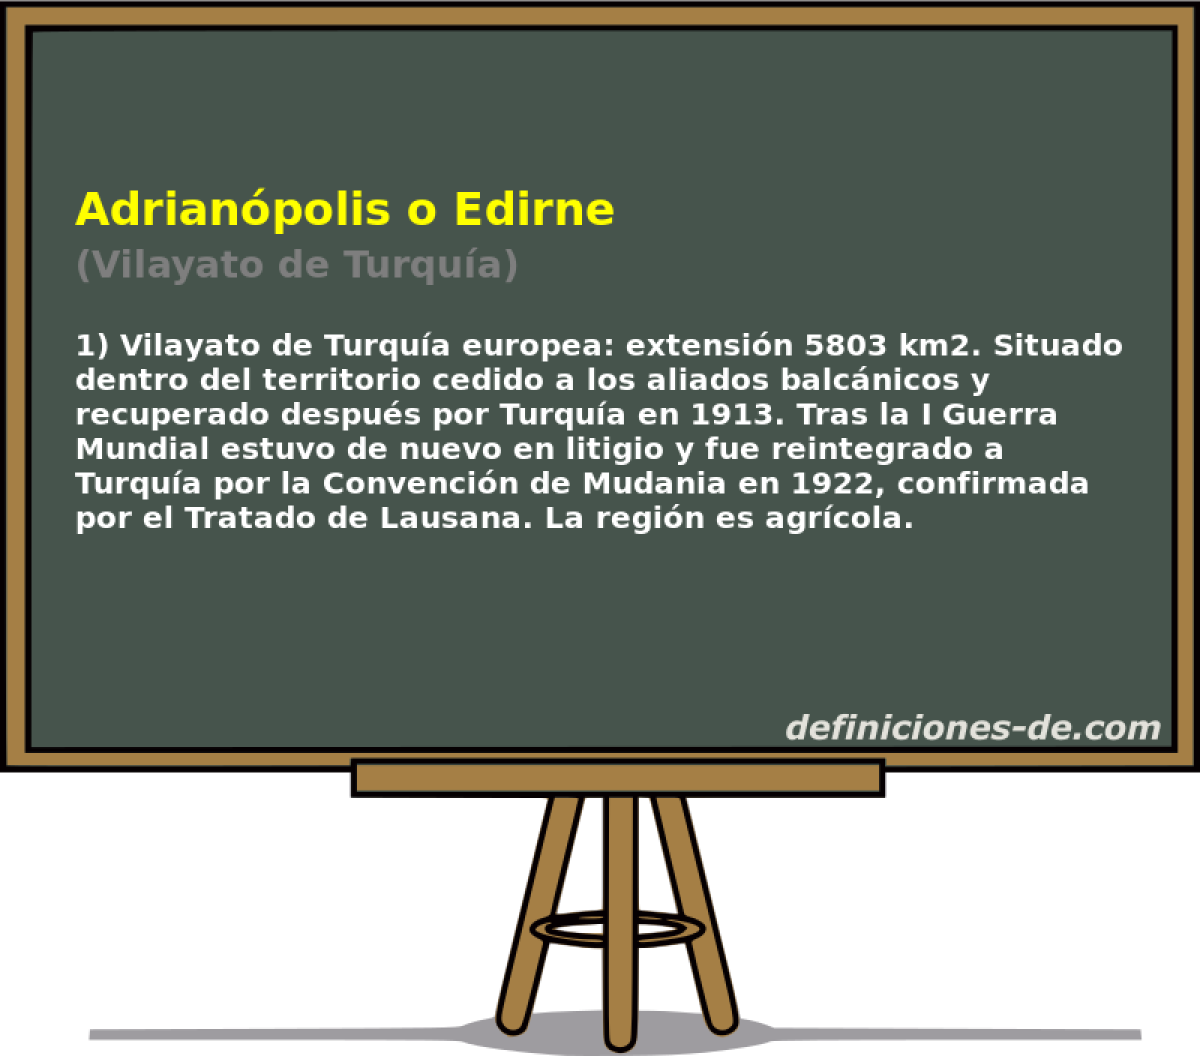 Adrianpolis o Edirne (Vilayato de Turqua)